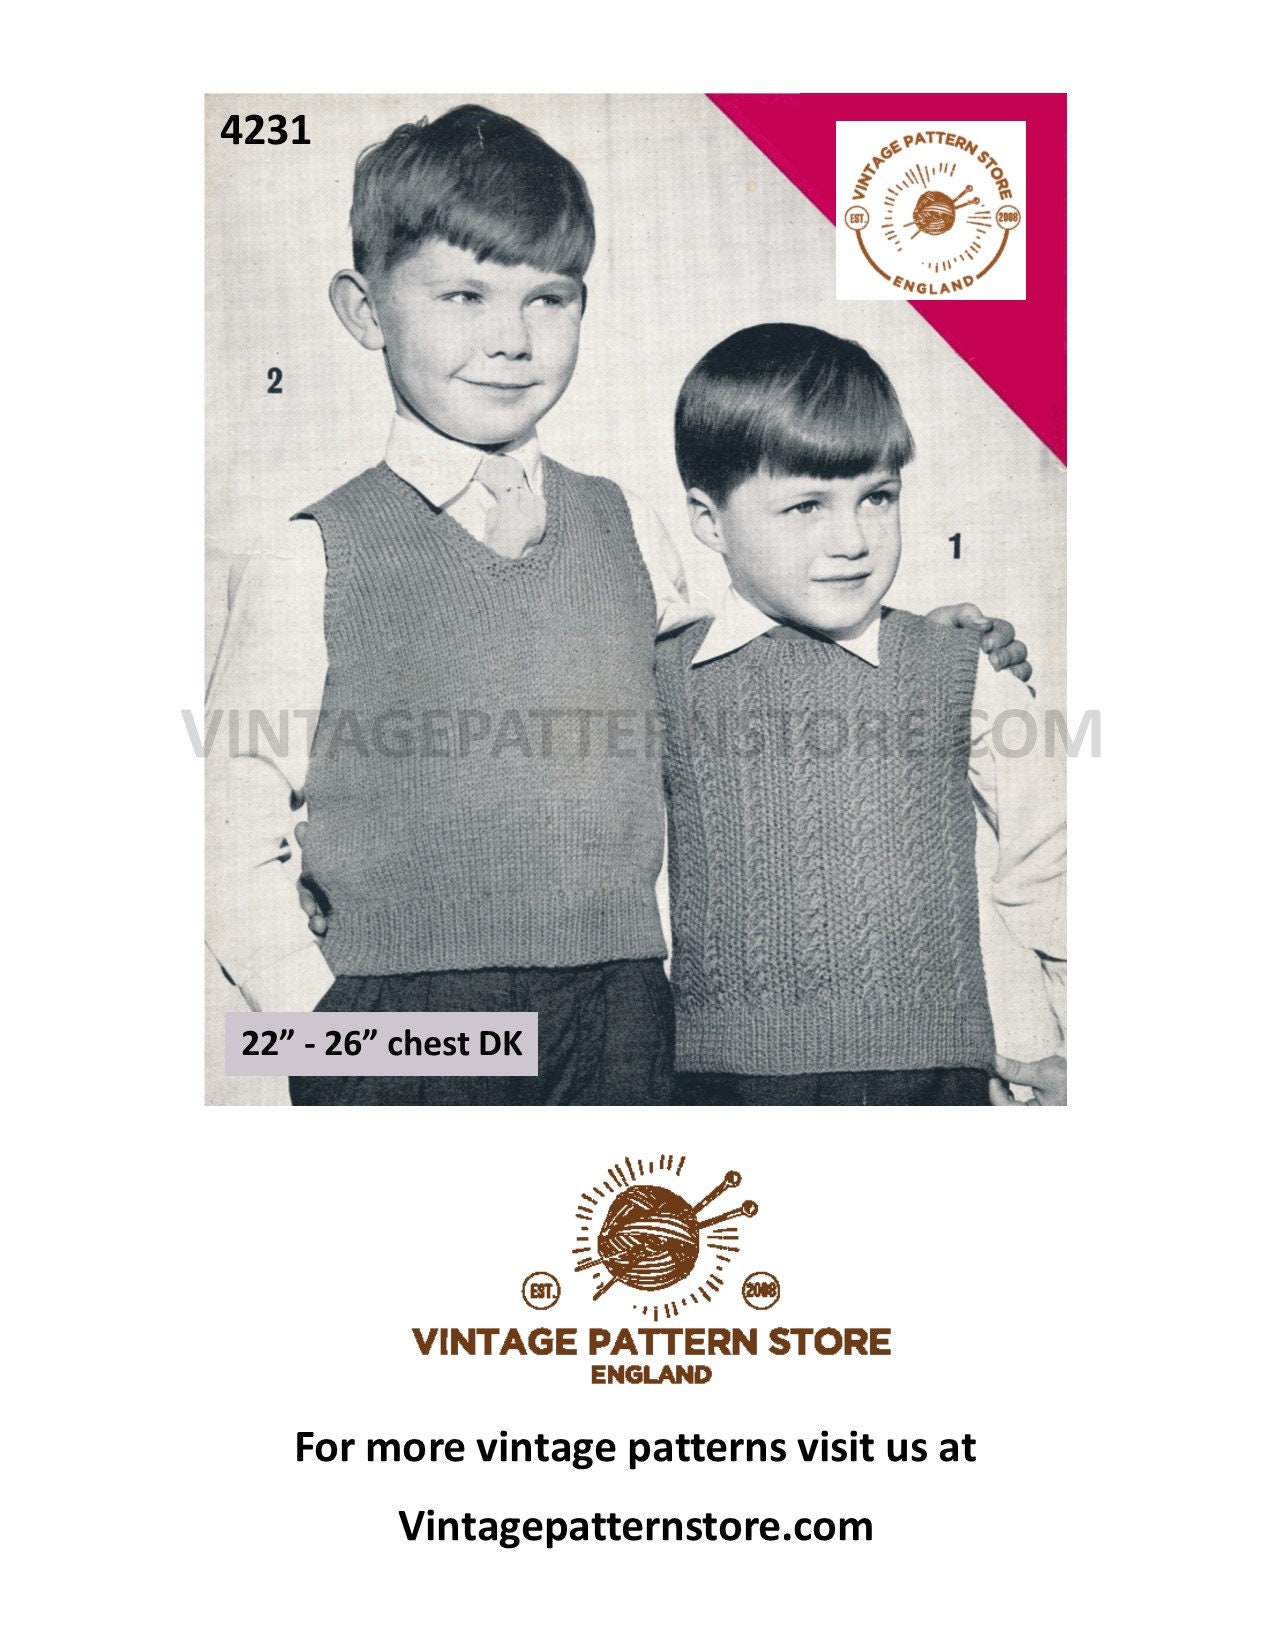 Vintage Sewing Pattern 1950s 50s / Crop Top Bra Bikini Top Halter